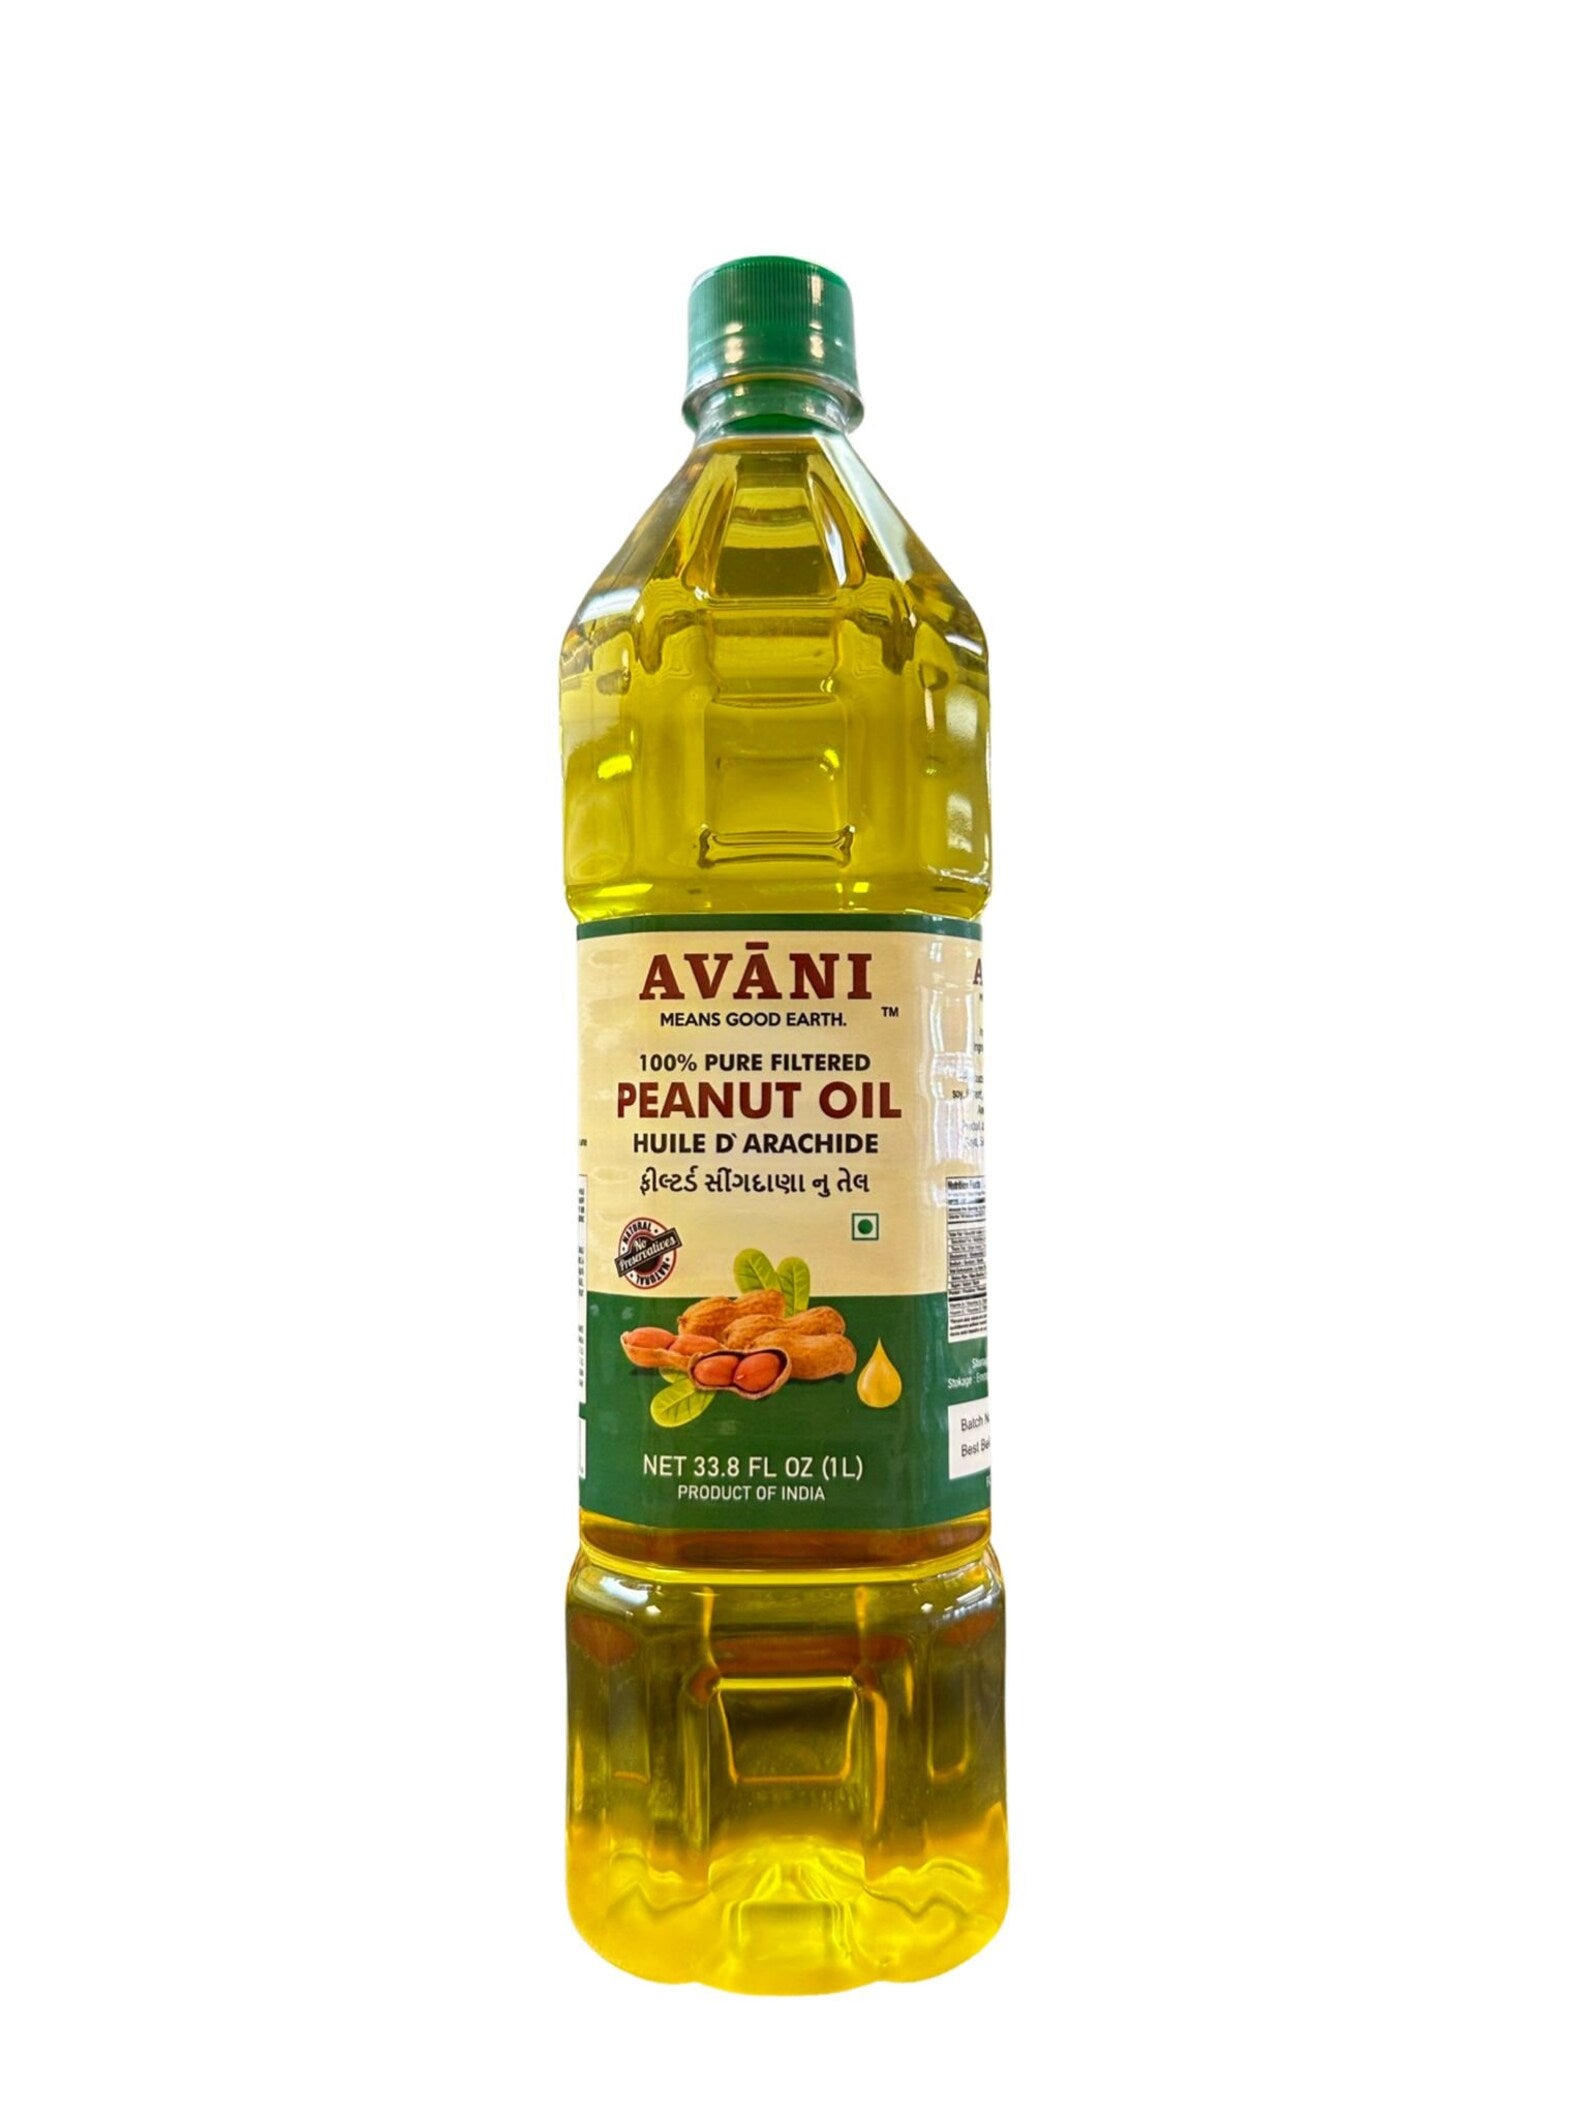 Avani Peanut Nut (Groundnut) Oil, 4 litre